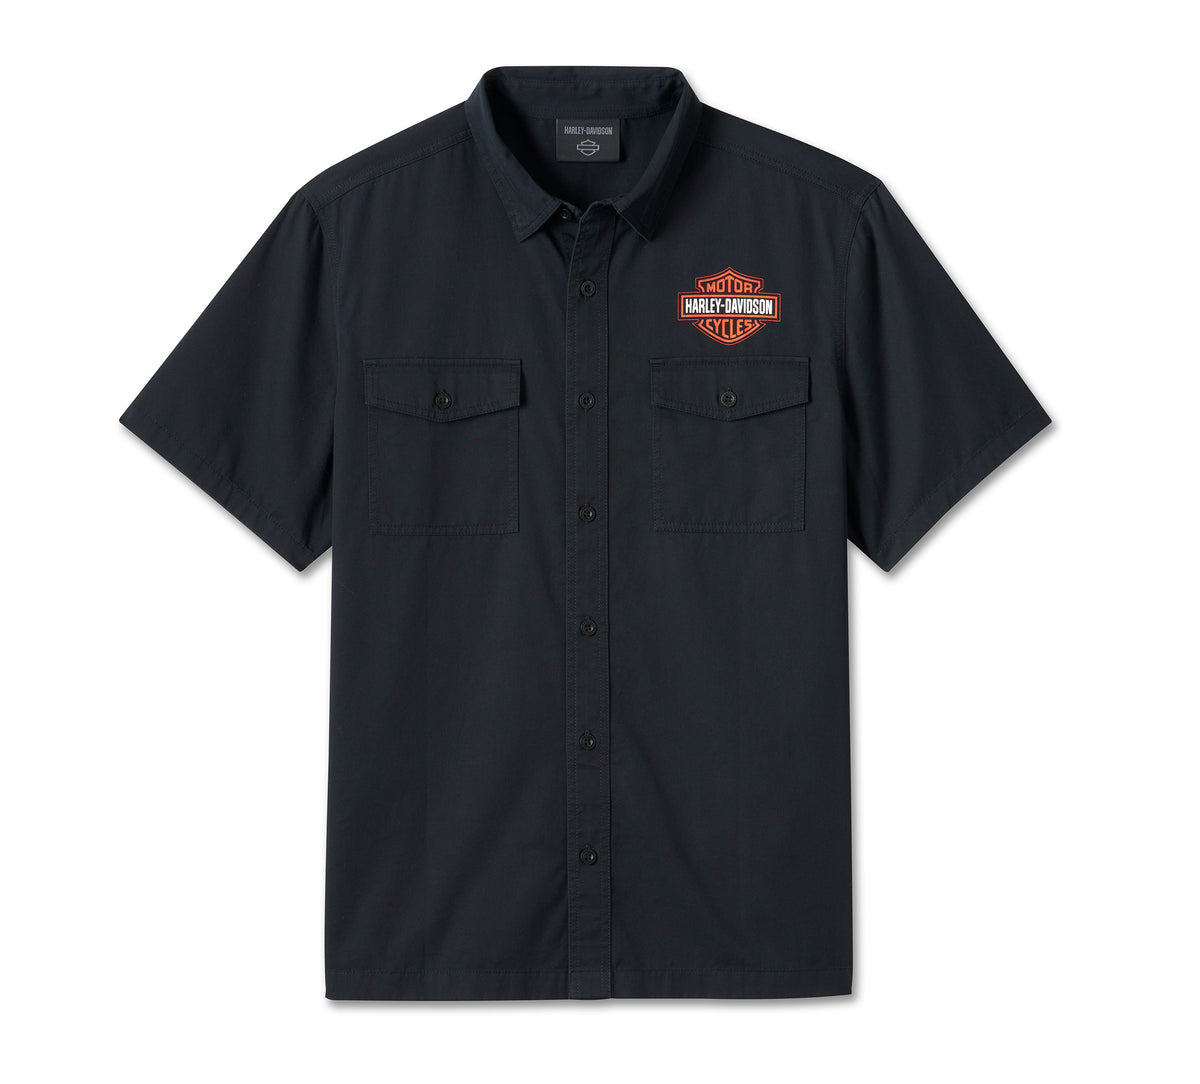 Harley-Davidson Men's Bar & Shield Shirt Black